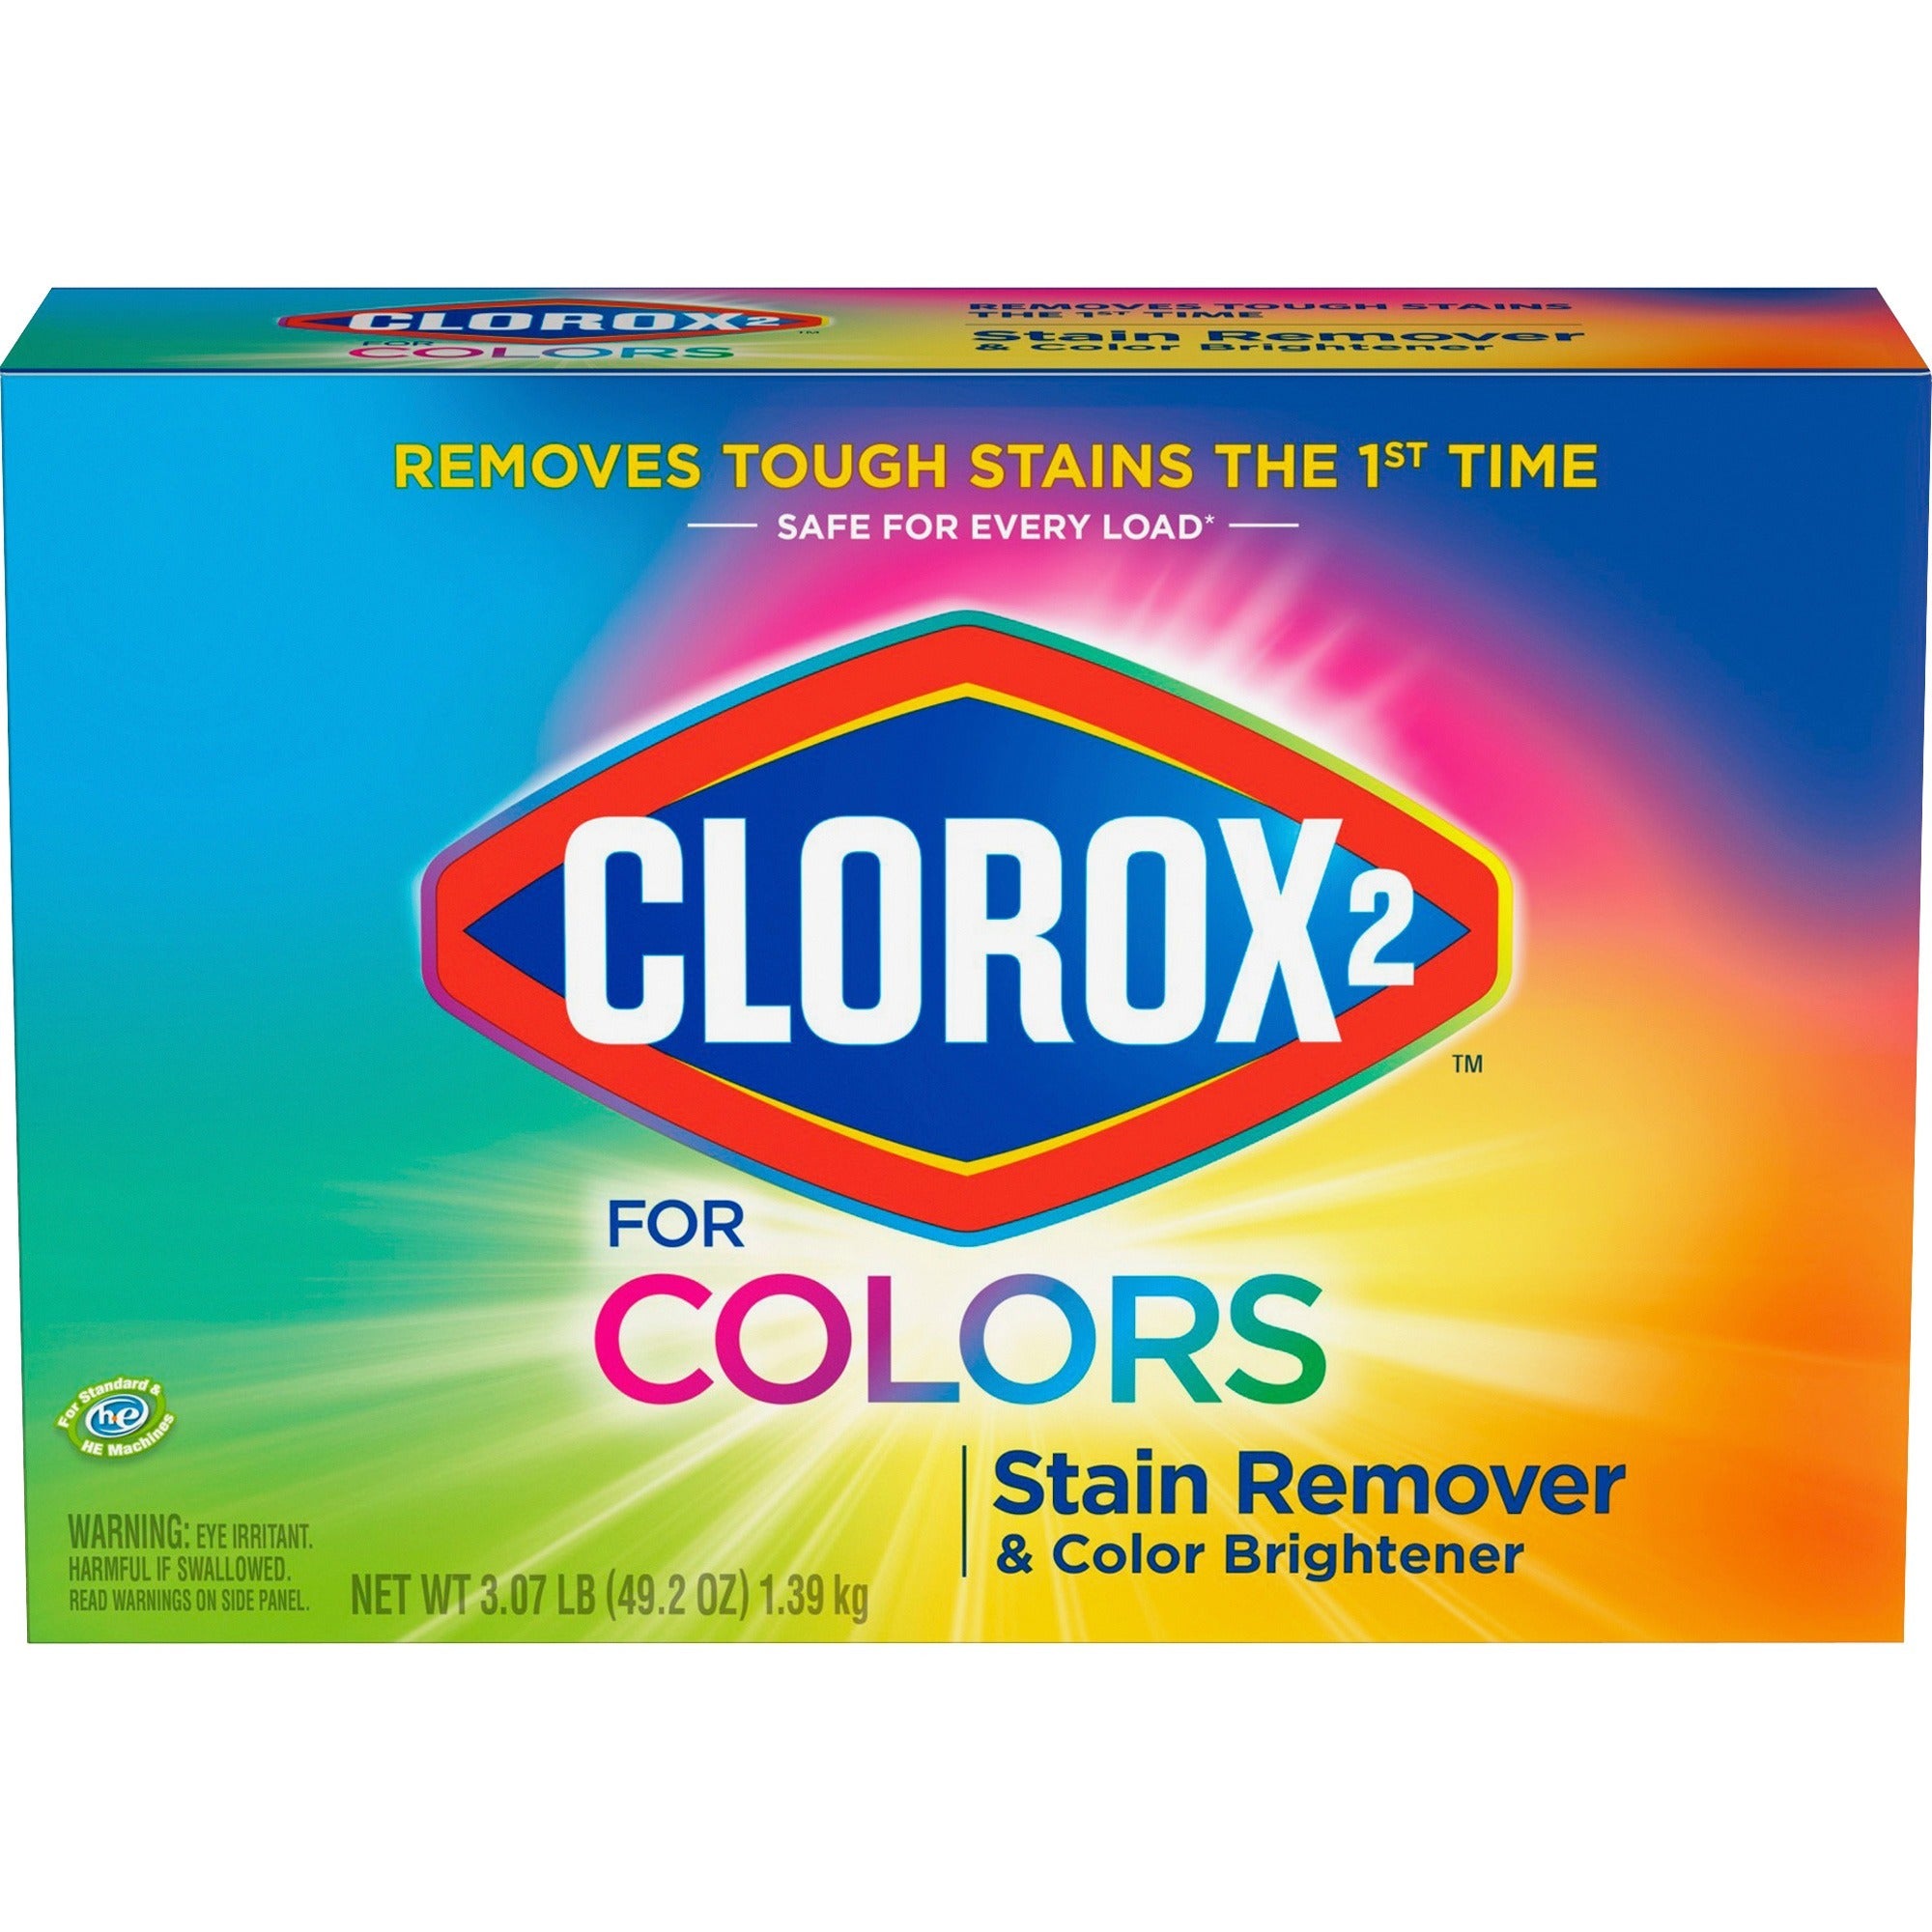 clorox-2-for-colors-stain-remover-and-color-brightener-powder-4920-oz-307-lb-4-carton-multi_clo03098ct - 2